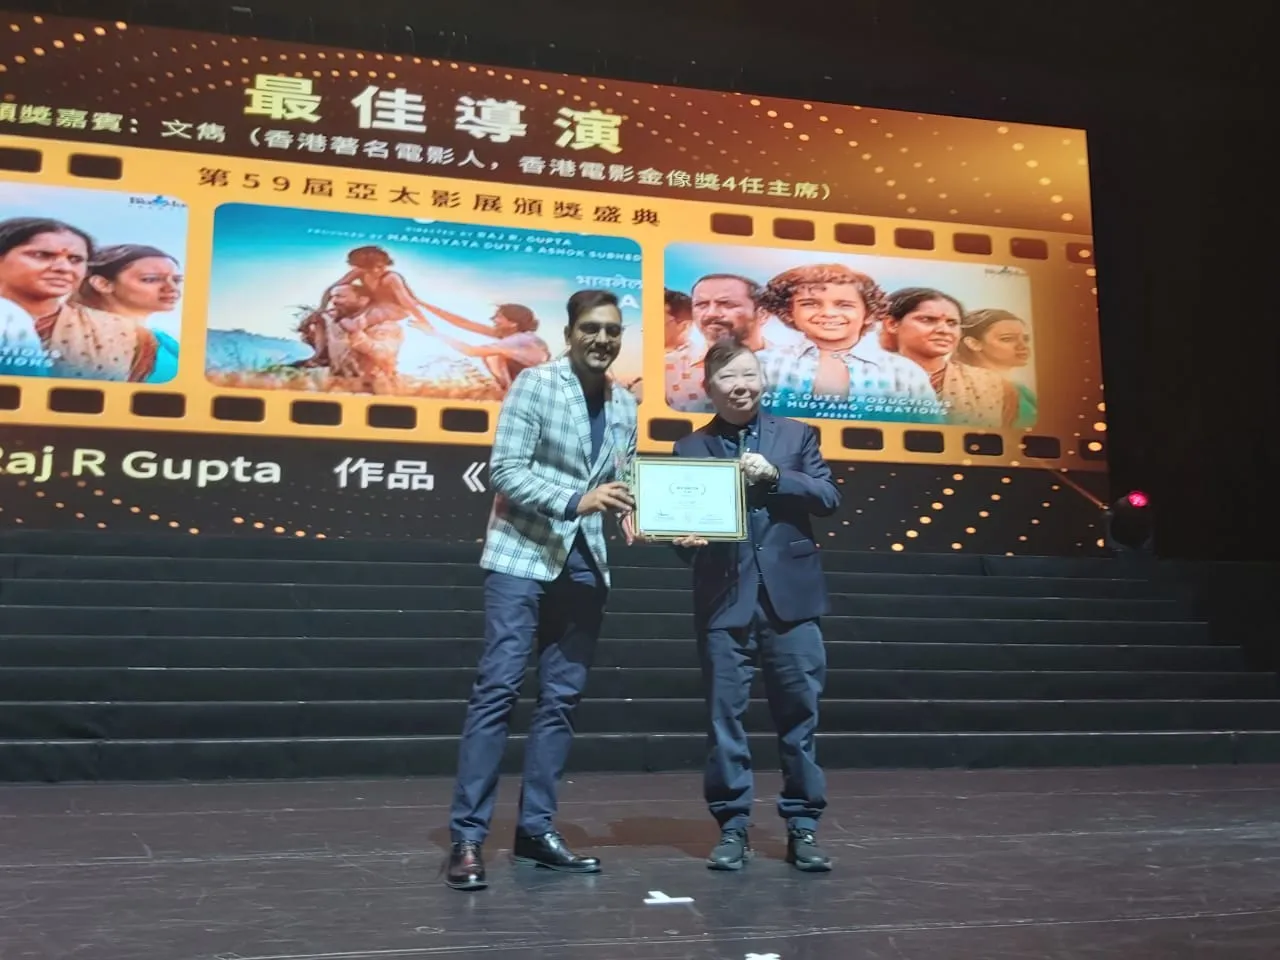 संजय दत्त प्रोडक्शंस की पहली मराठी फ़िल्म “बाबा” ने प्रतिष्ठित अंतरराष्ट्रीय पुरस्कार